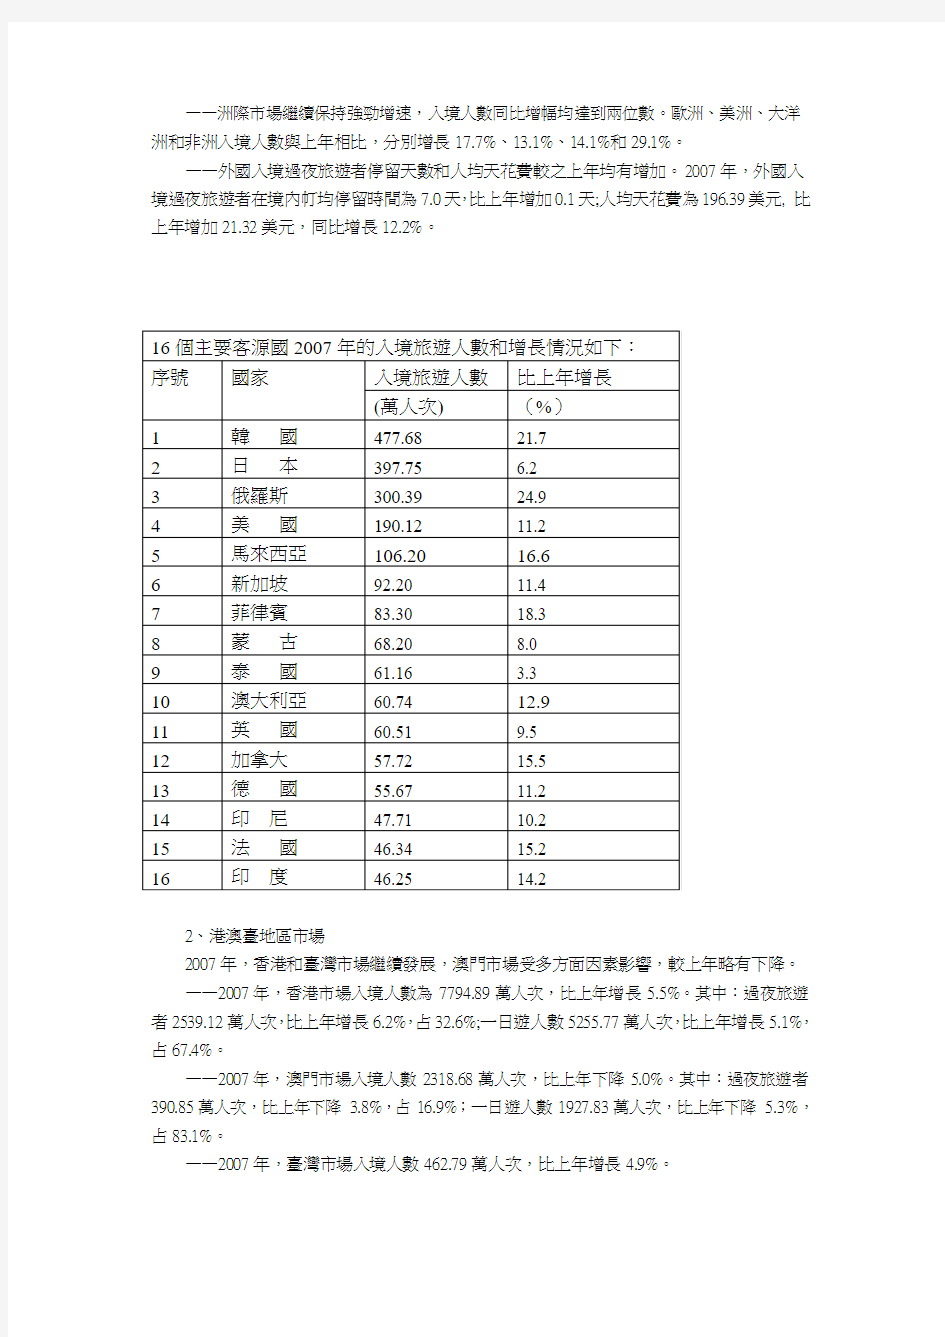 2007年中国旅游业统计公报